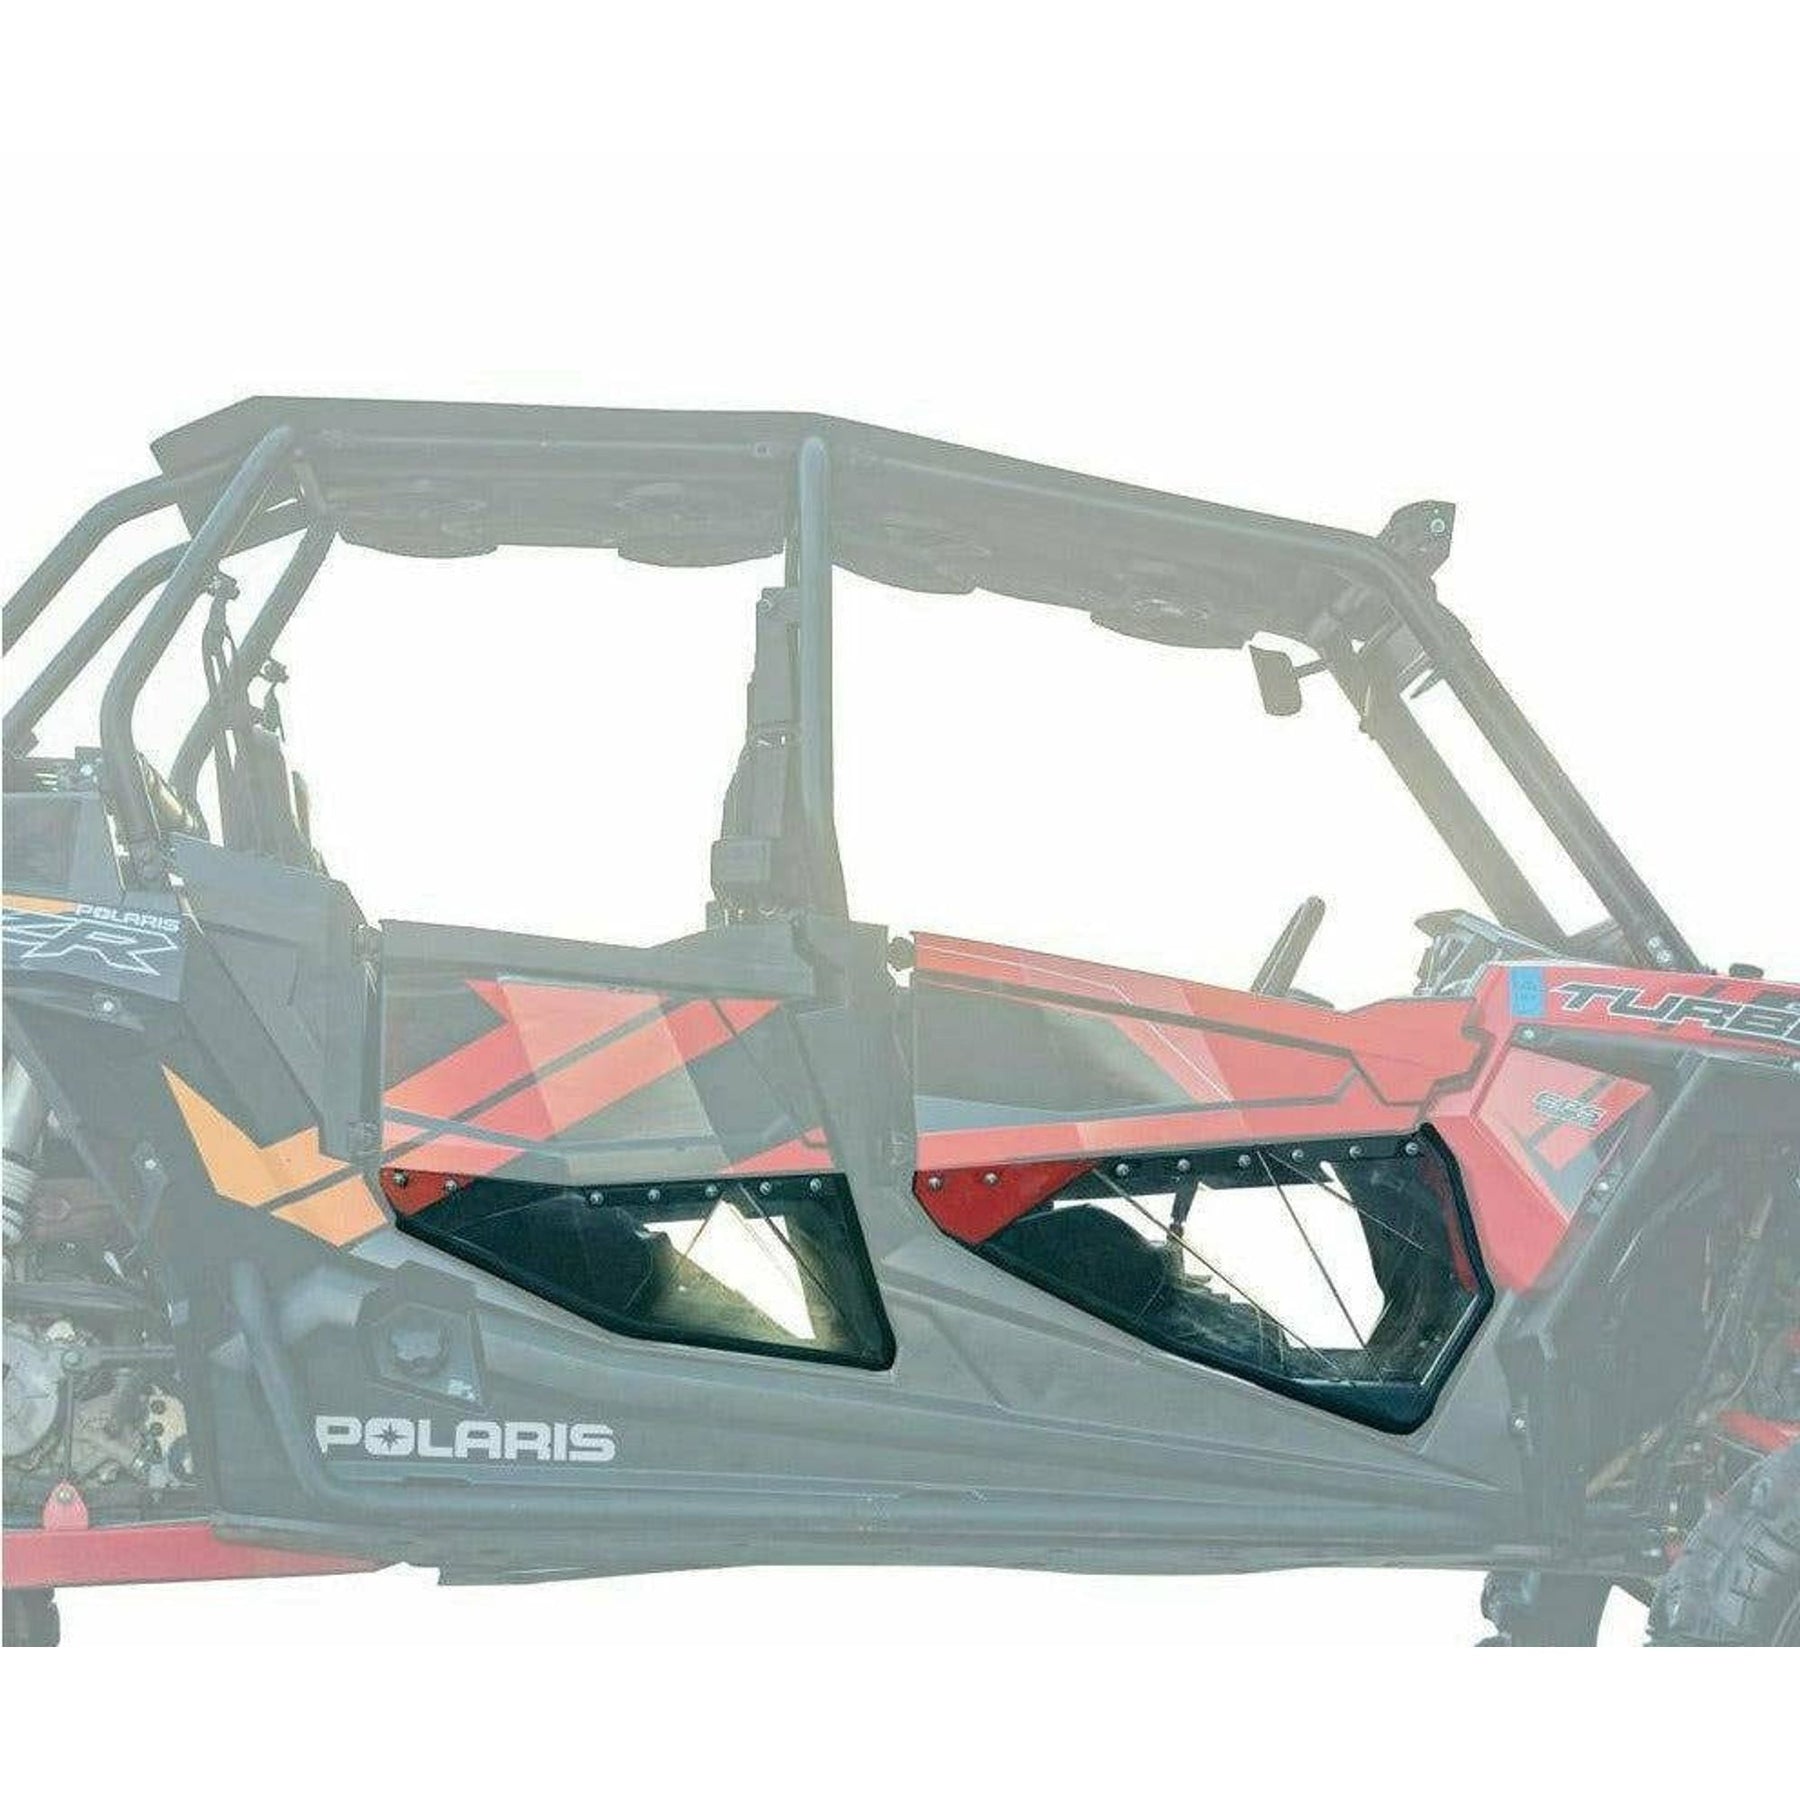 SuperATV Polaris RZR 900 S Clear Lower Doors